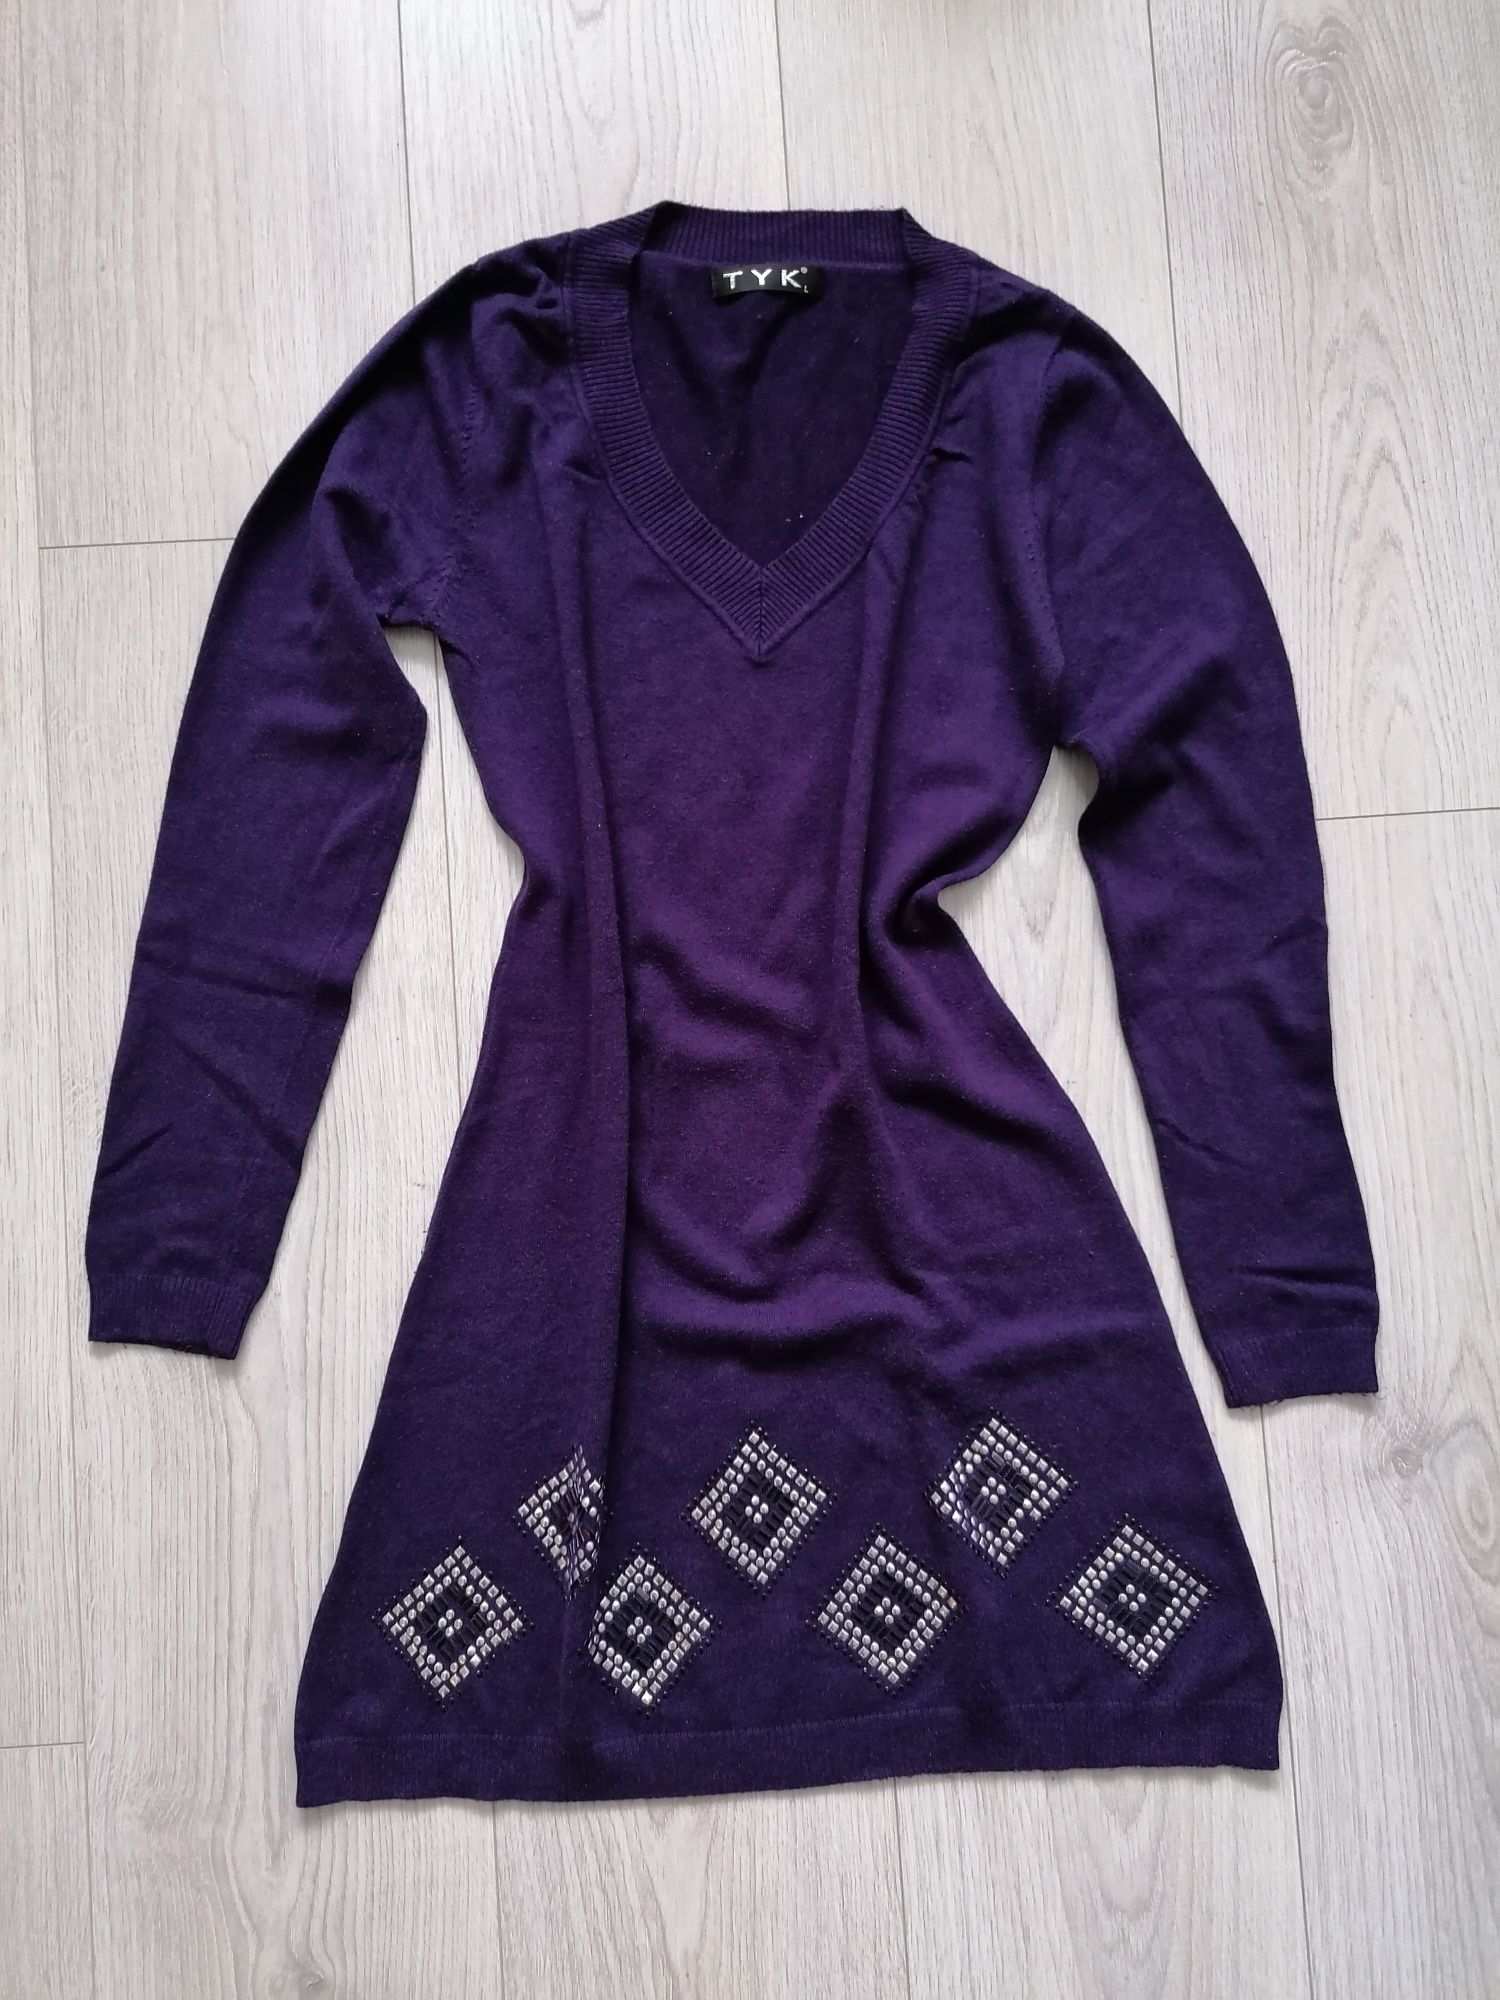 Krótka sukienka sweterek w śliwkowym kolorze